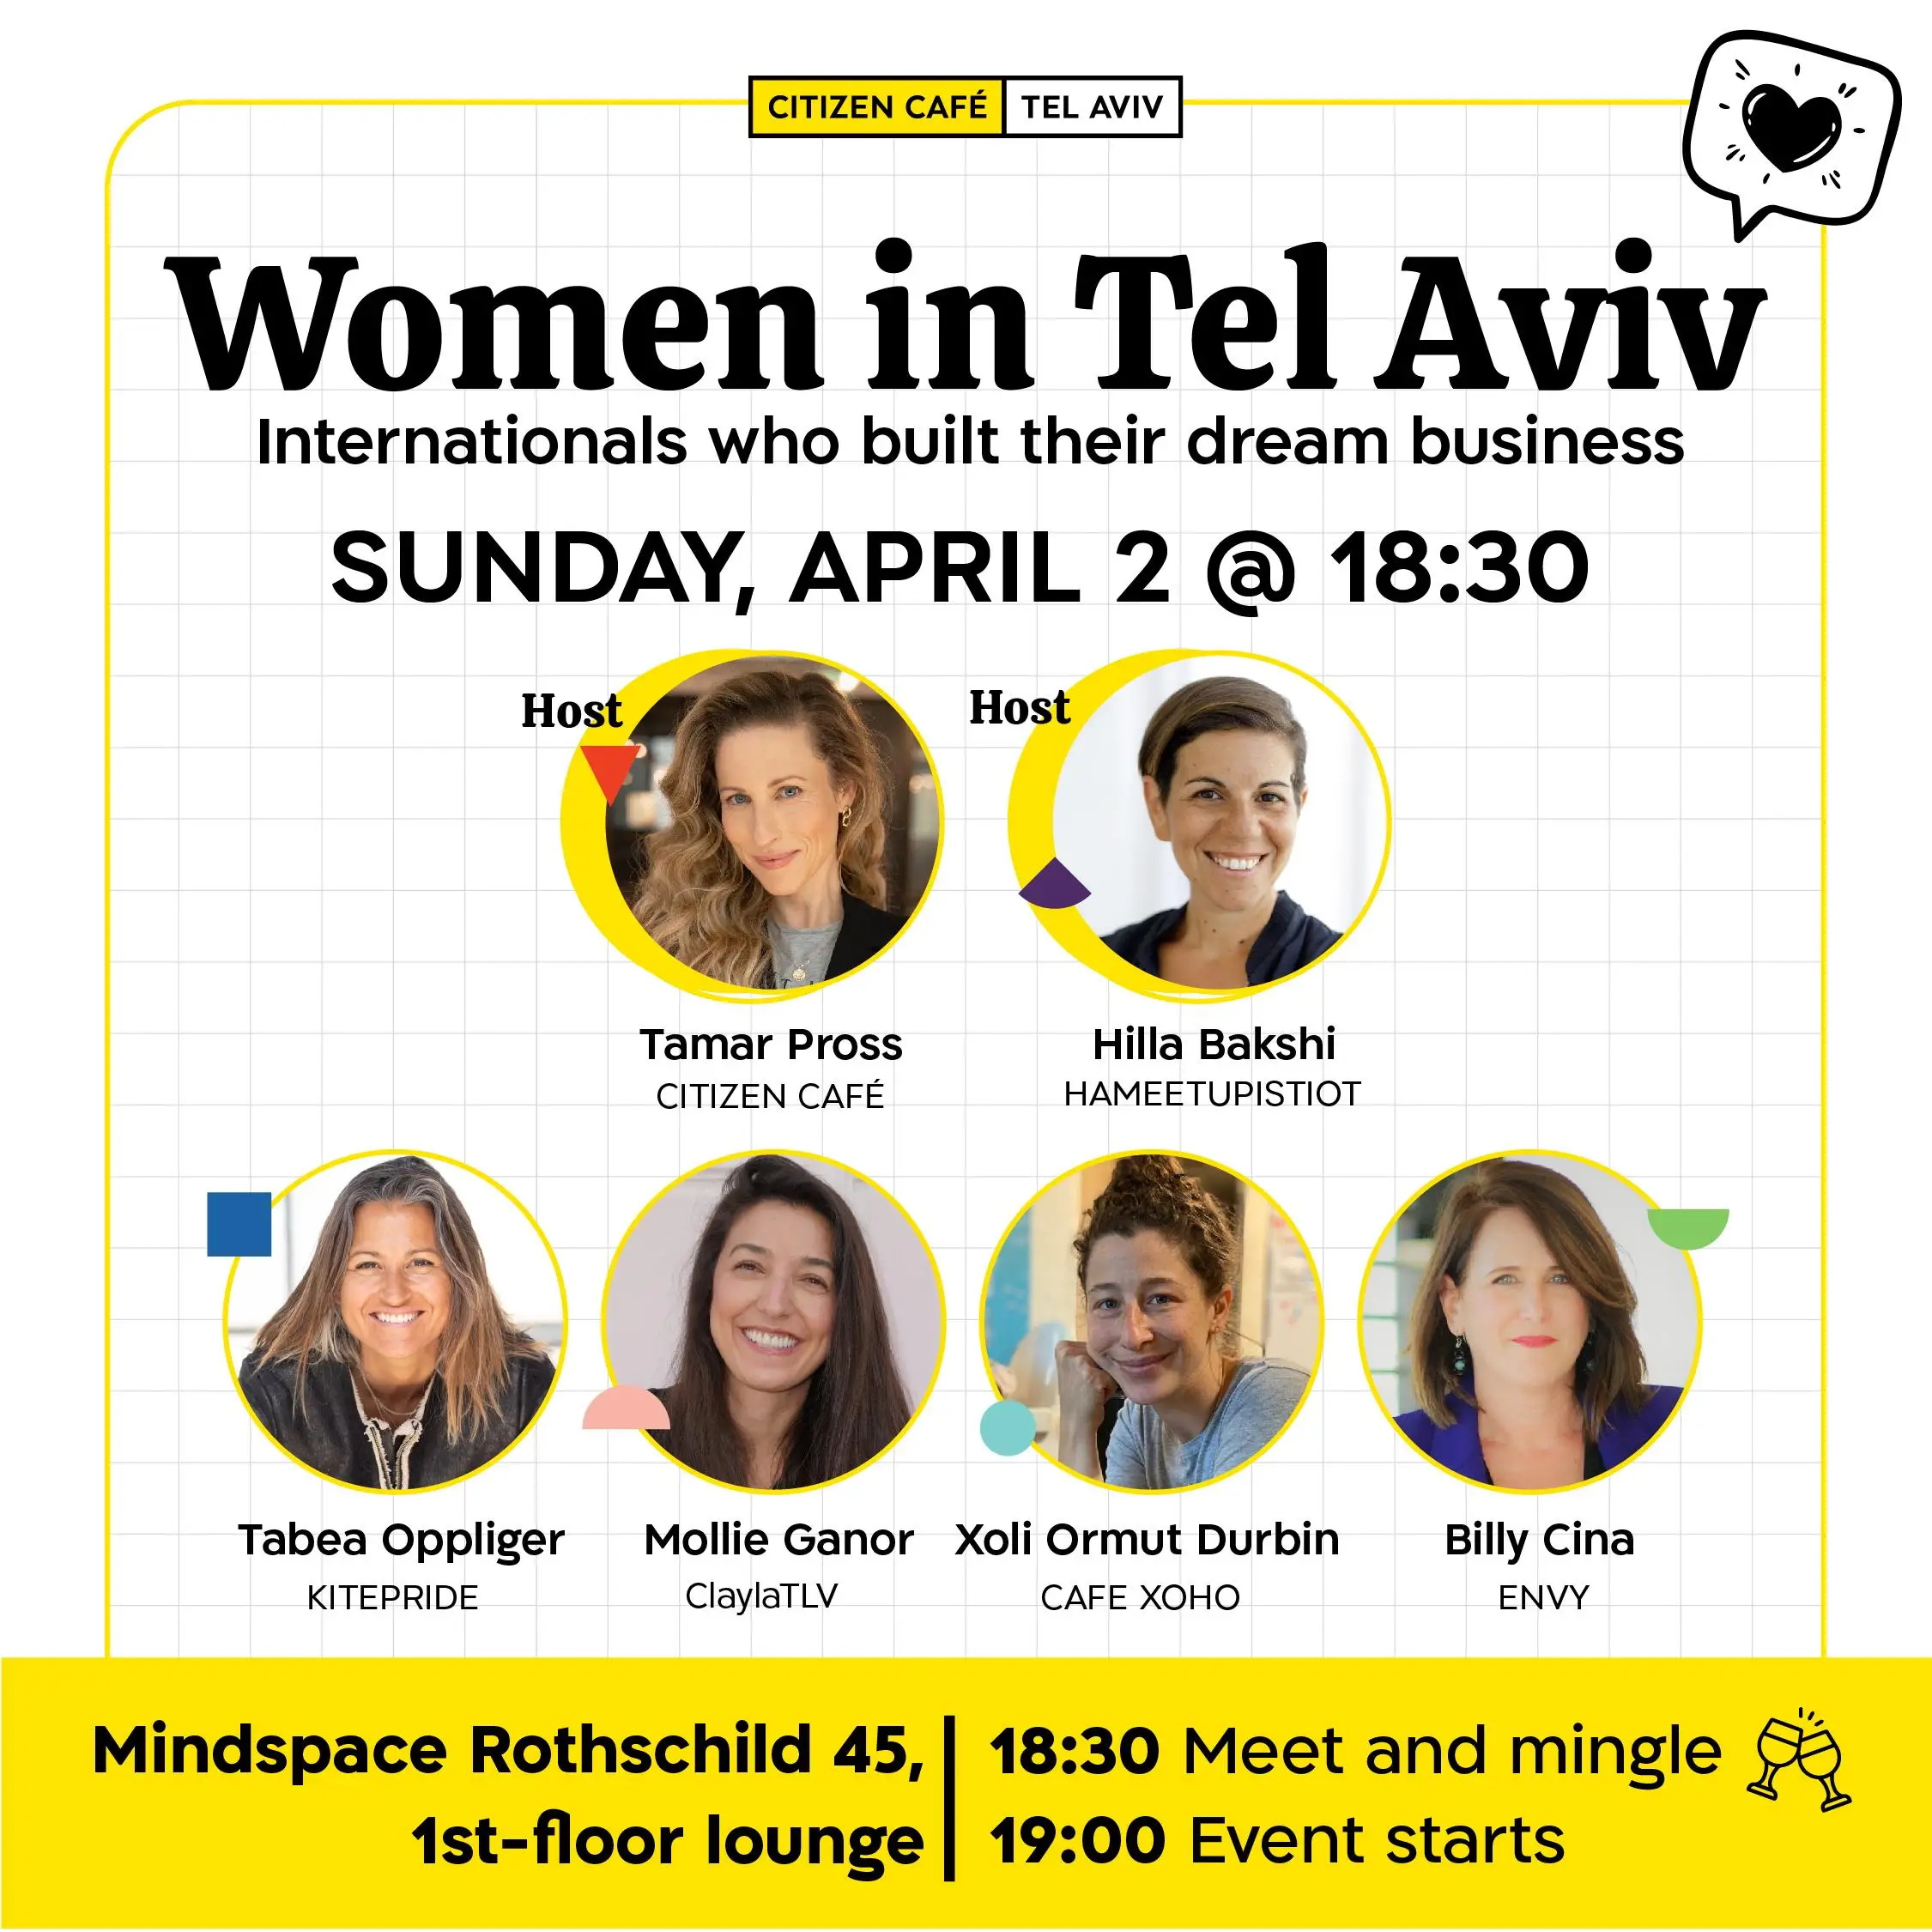 Women in Tel Aviv Panel Citizen Café TLV